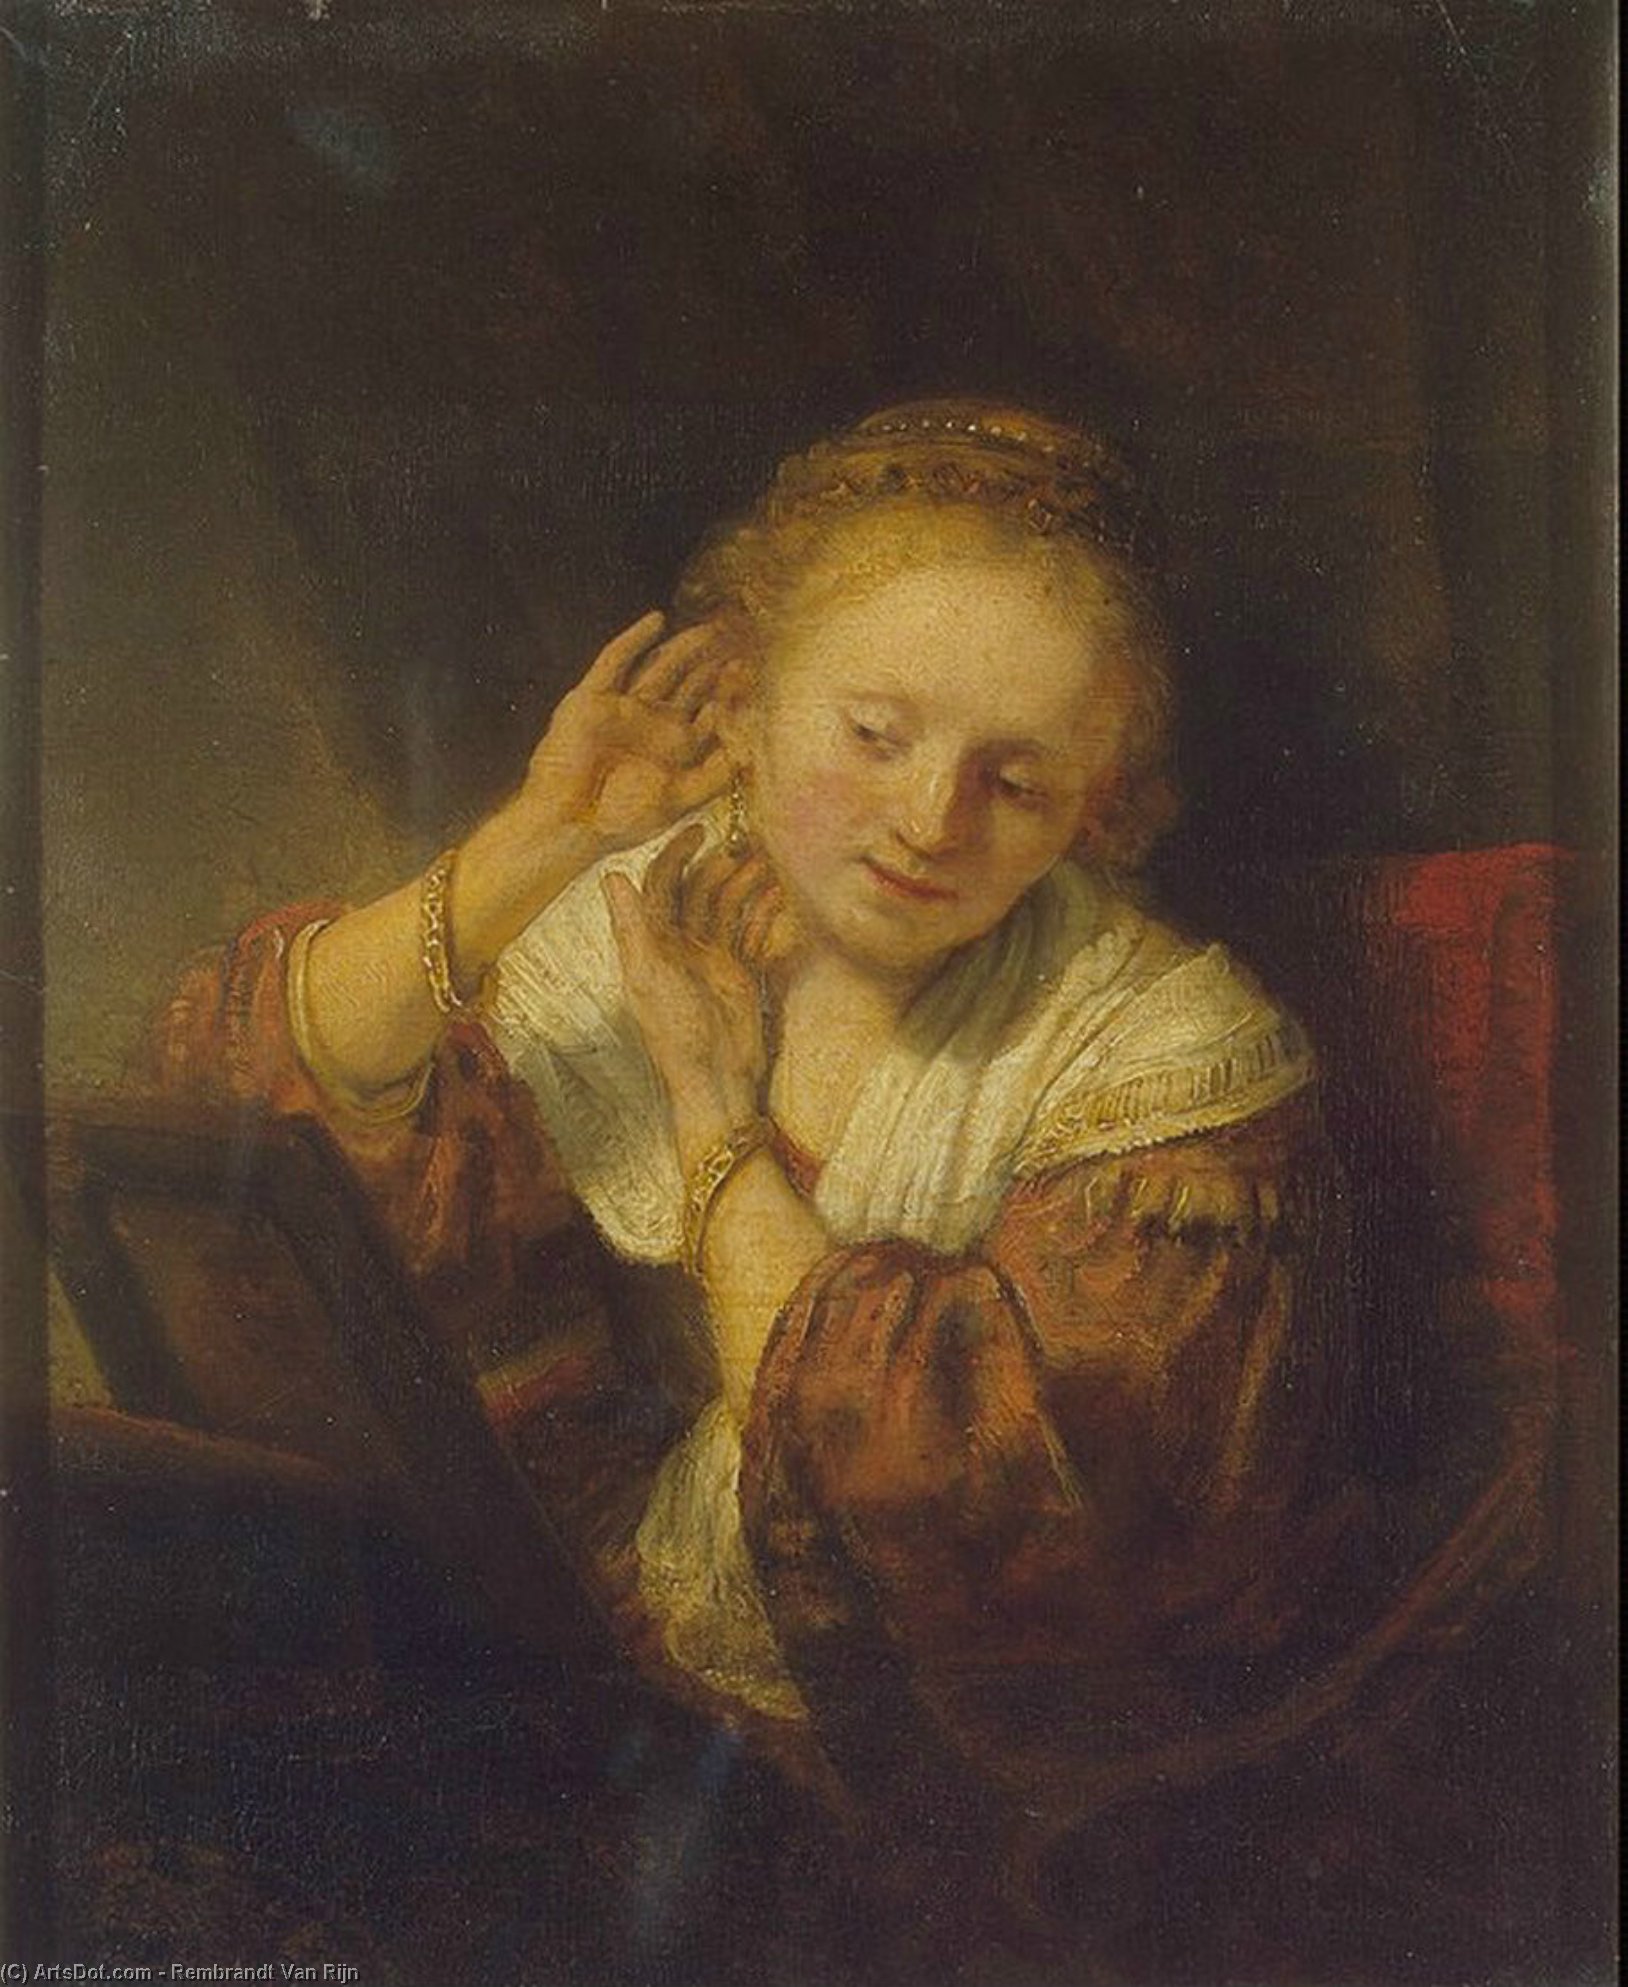 WikiOO.org - אנציקלופדיה לאמנויות יפות - ציור, יצירות אמנות Rembrandt Van Rijn - Young Woman with Earrings, Ere